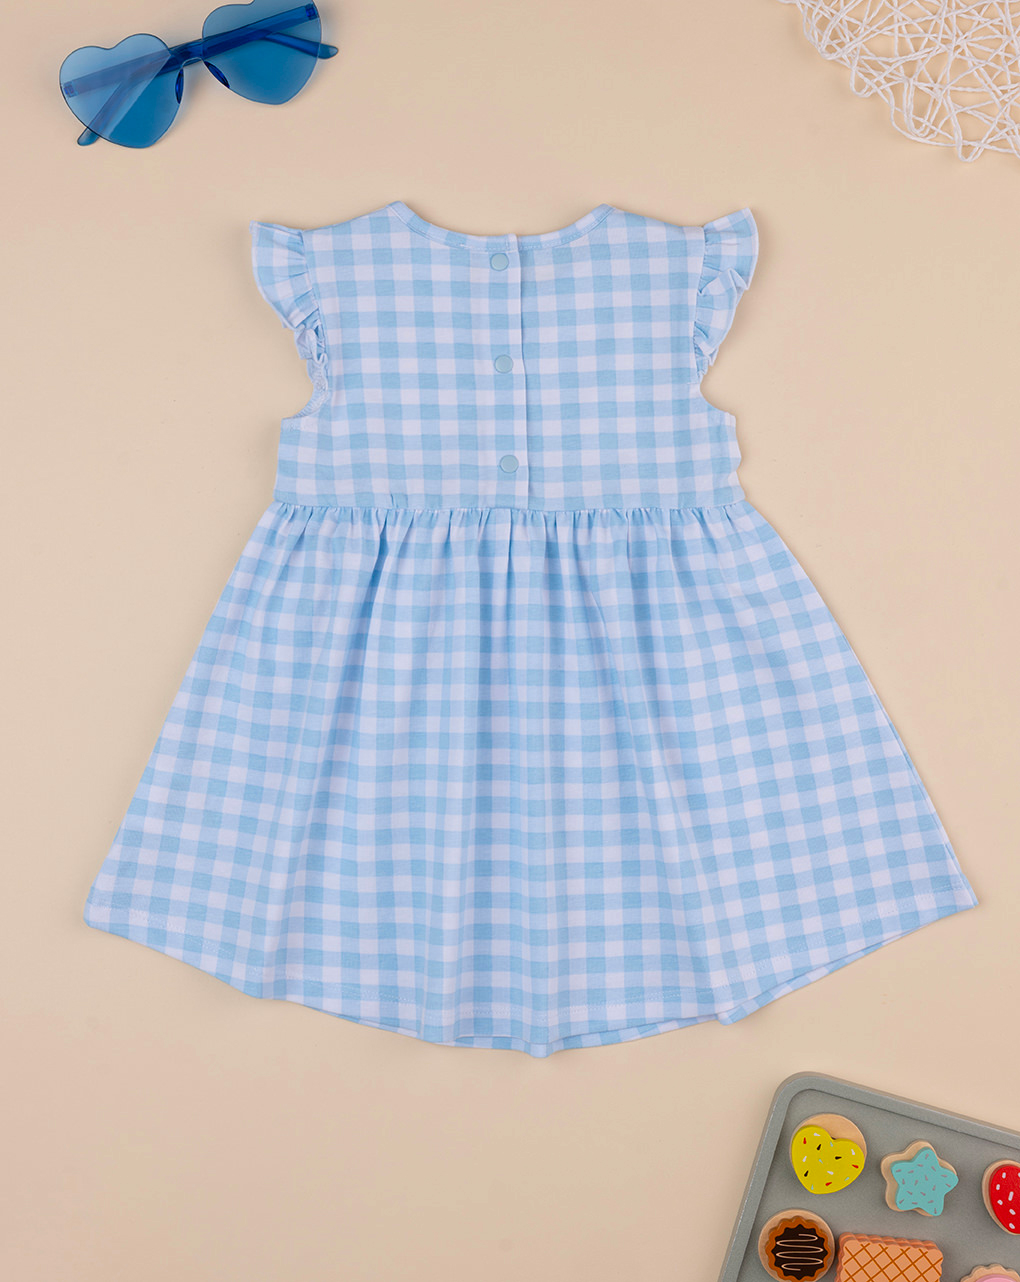 βρεφικό φόρεμα καρό γαλάζιο/λευκό για κορίτσι - Prénatal